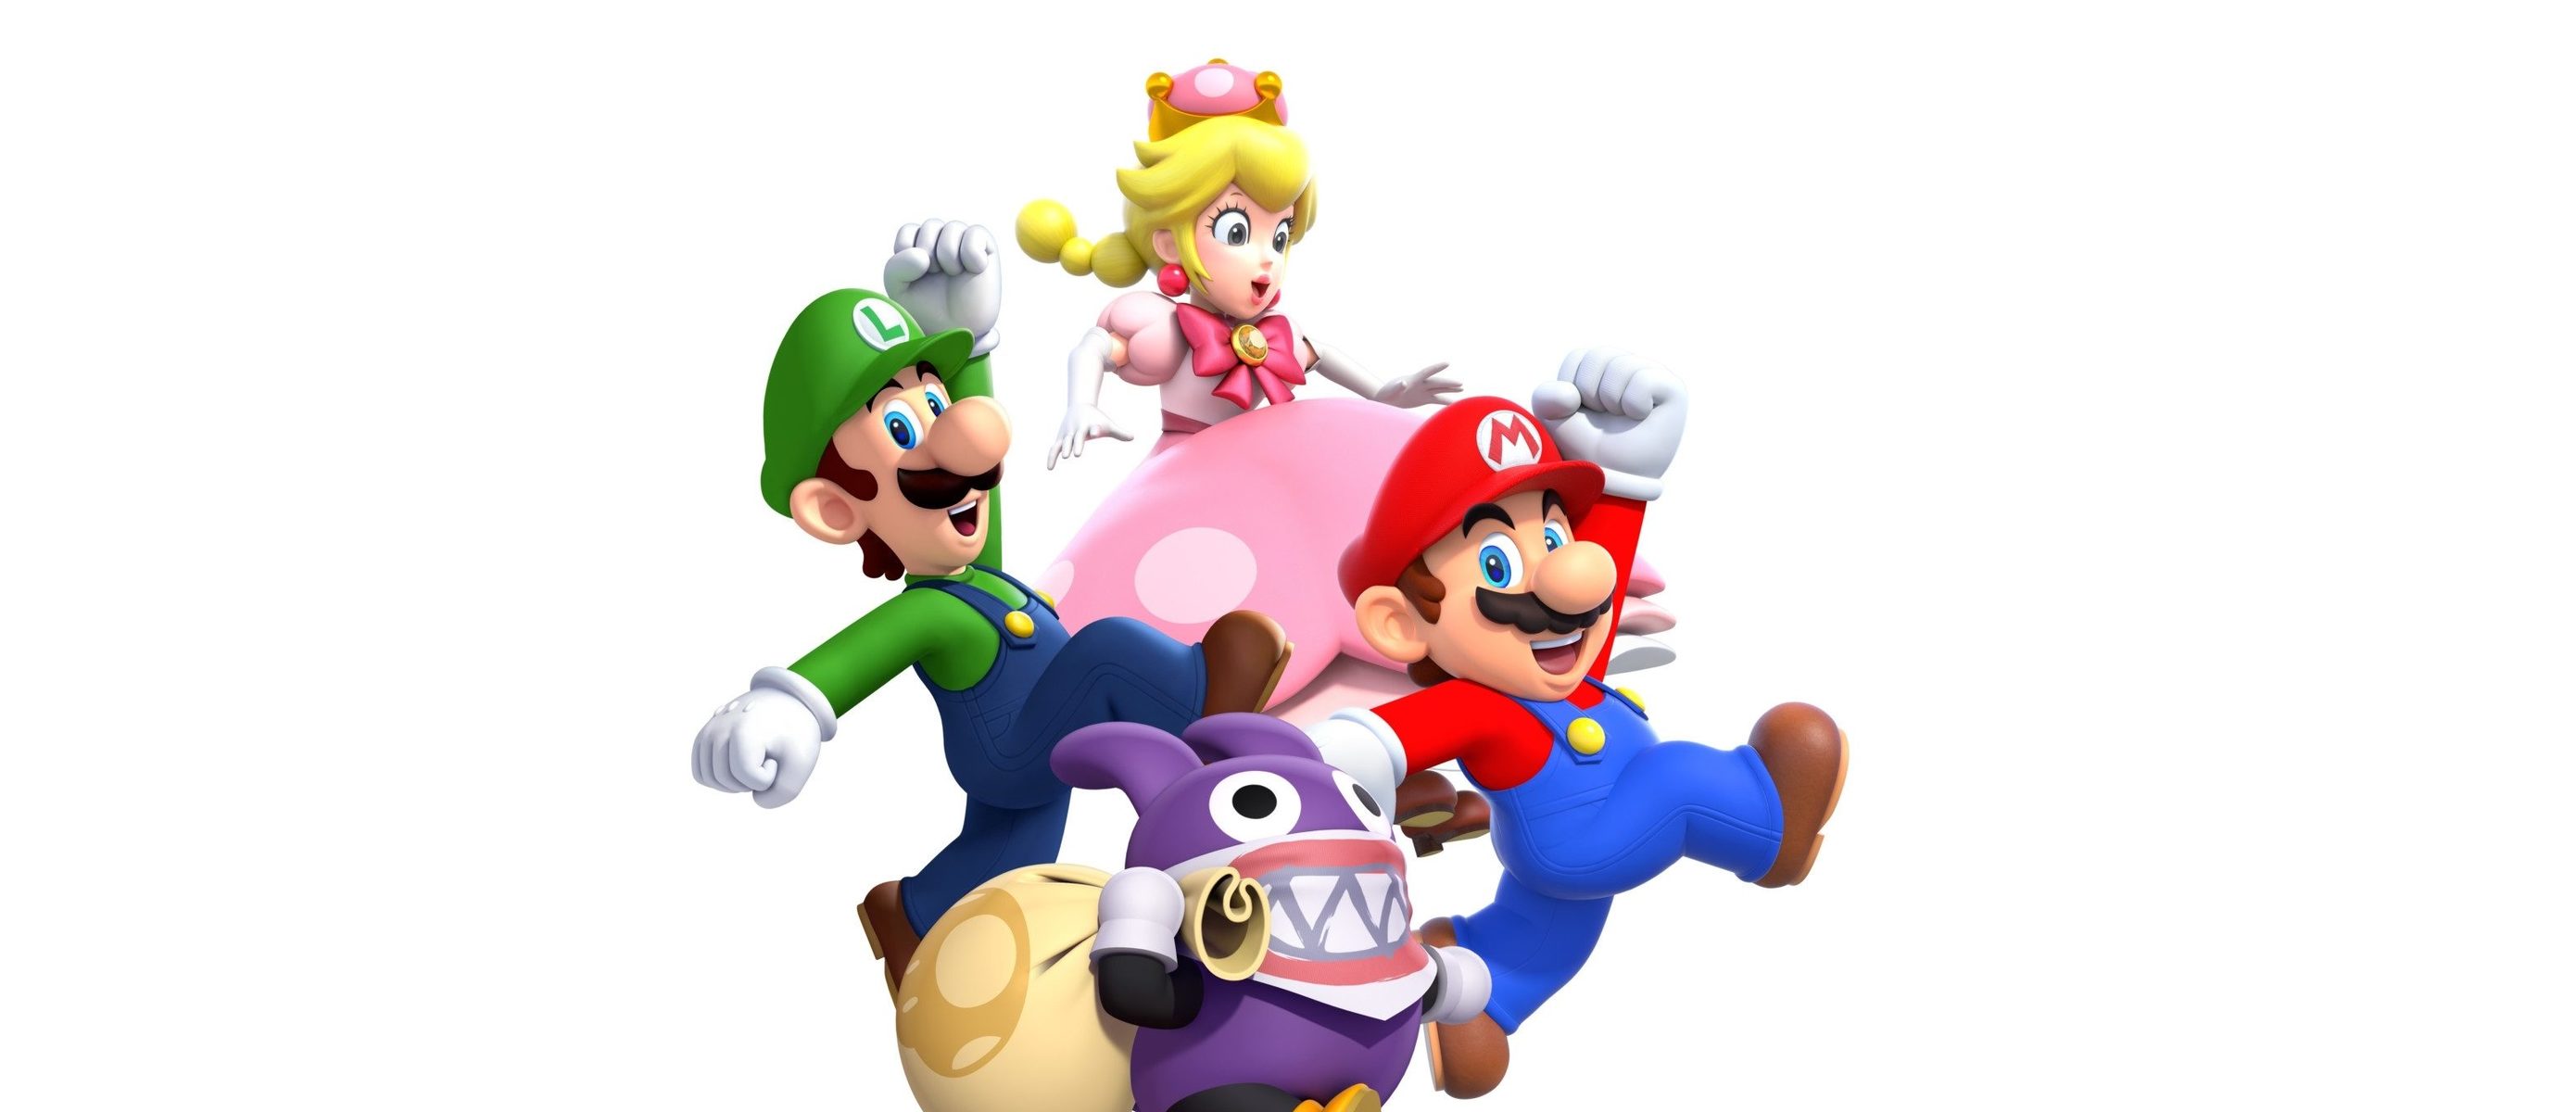 Newer mario bros download. Super Mario Bros Nintendo Switch. New super Mario Bros u. New super Mario Bros Wii. Super Mario Wii u.